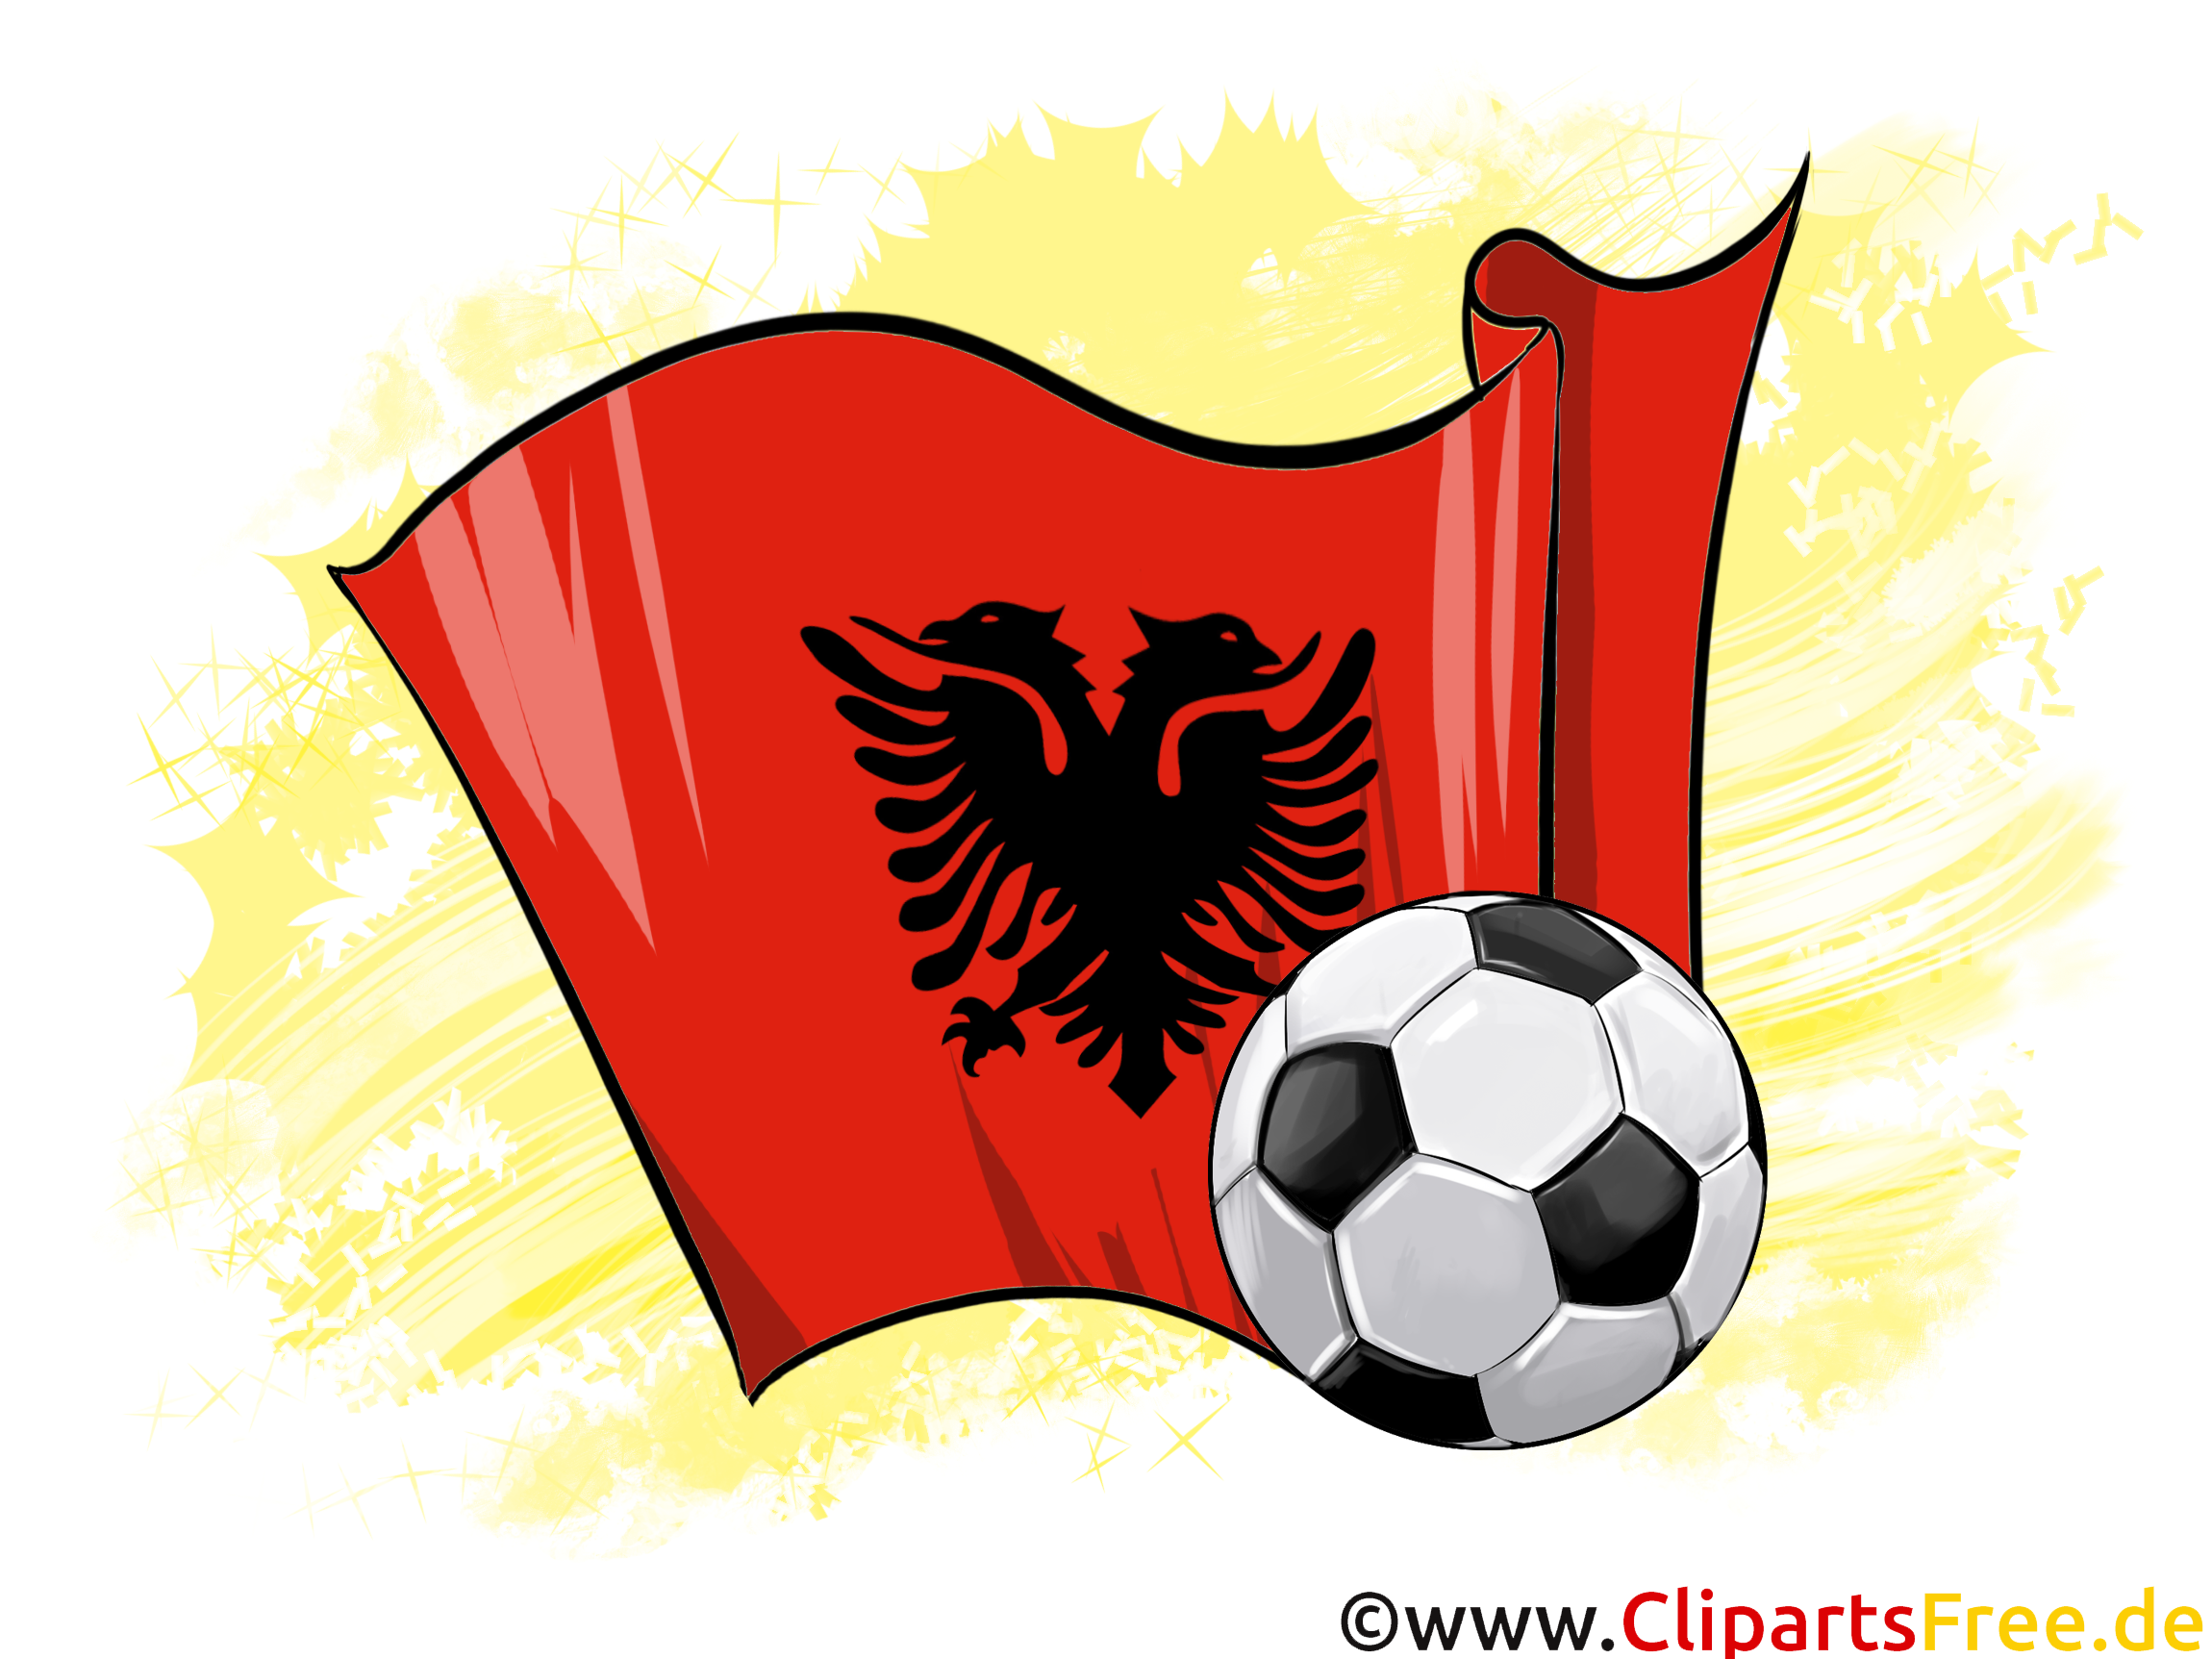 Albanie Drapeau Championnat d'Europe d'Monde pour télécharger